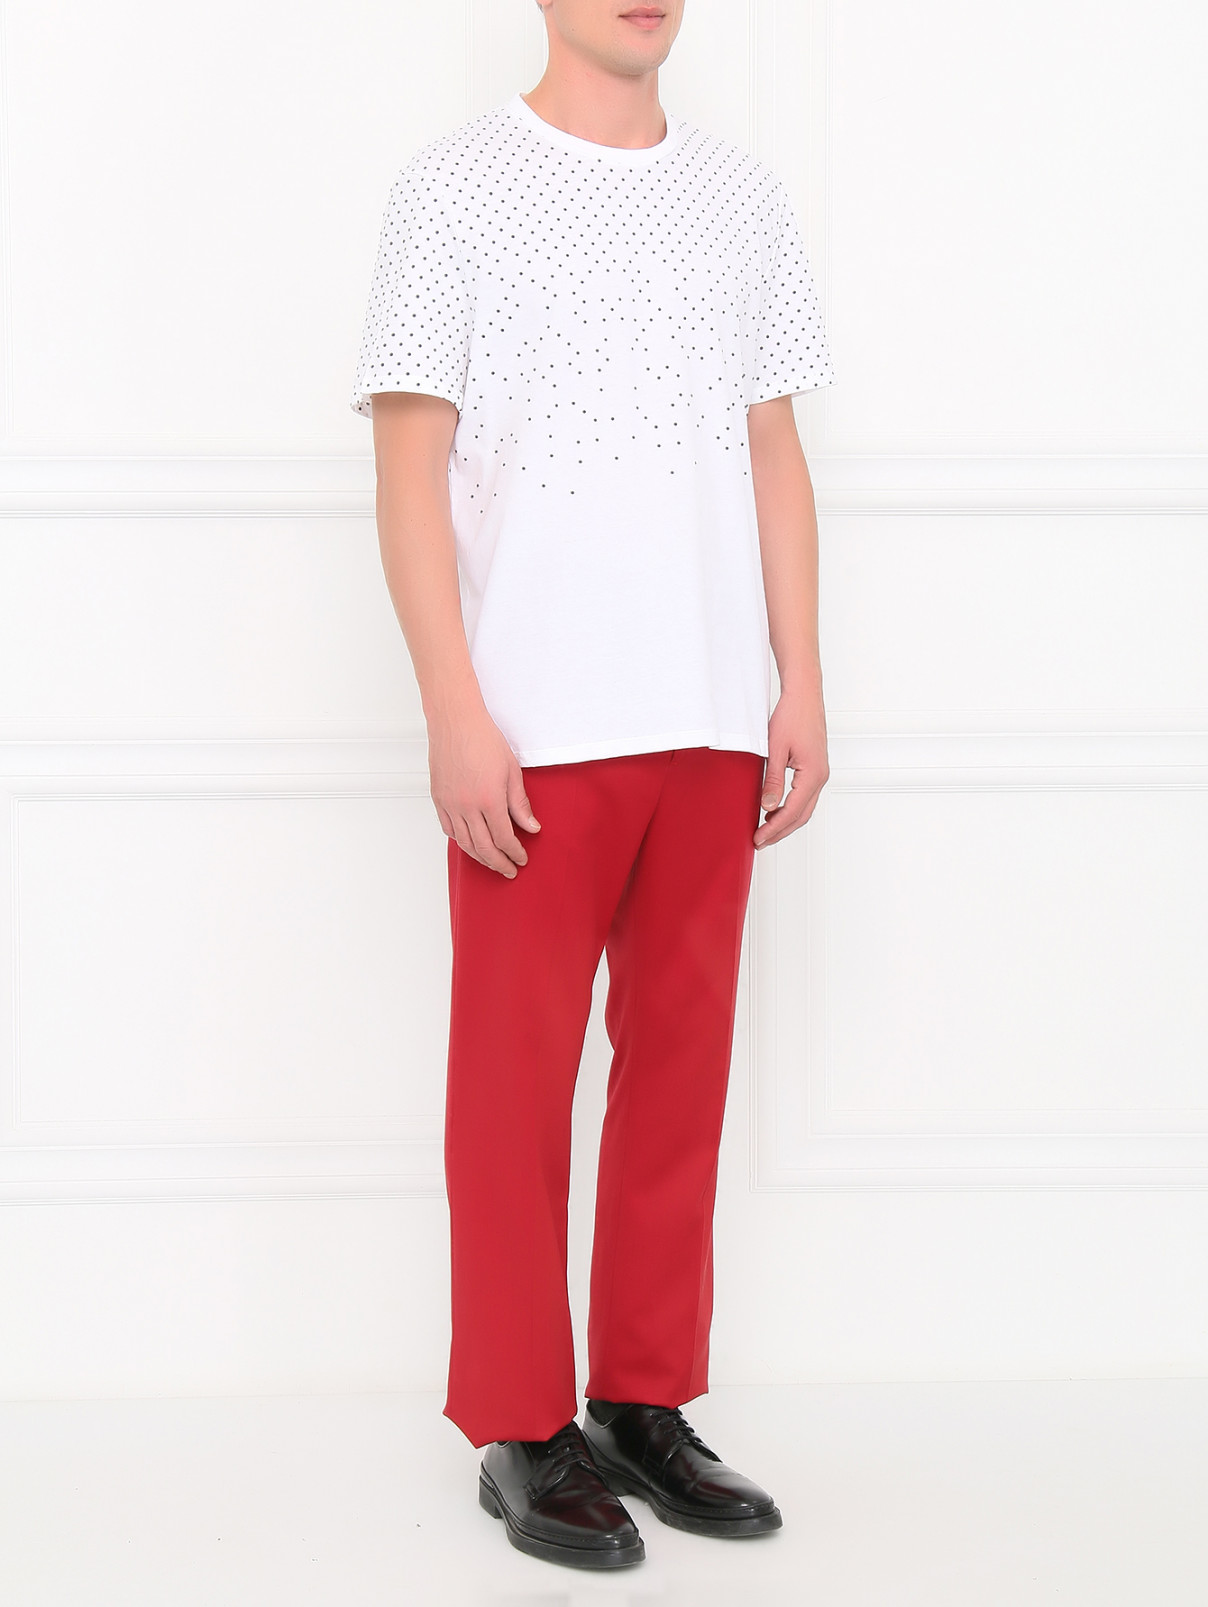 Прямые брюки из шерсти Jean Paul Gaultier  –  Модель Общий вид  – Цвет:  Красный